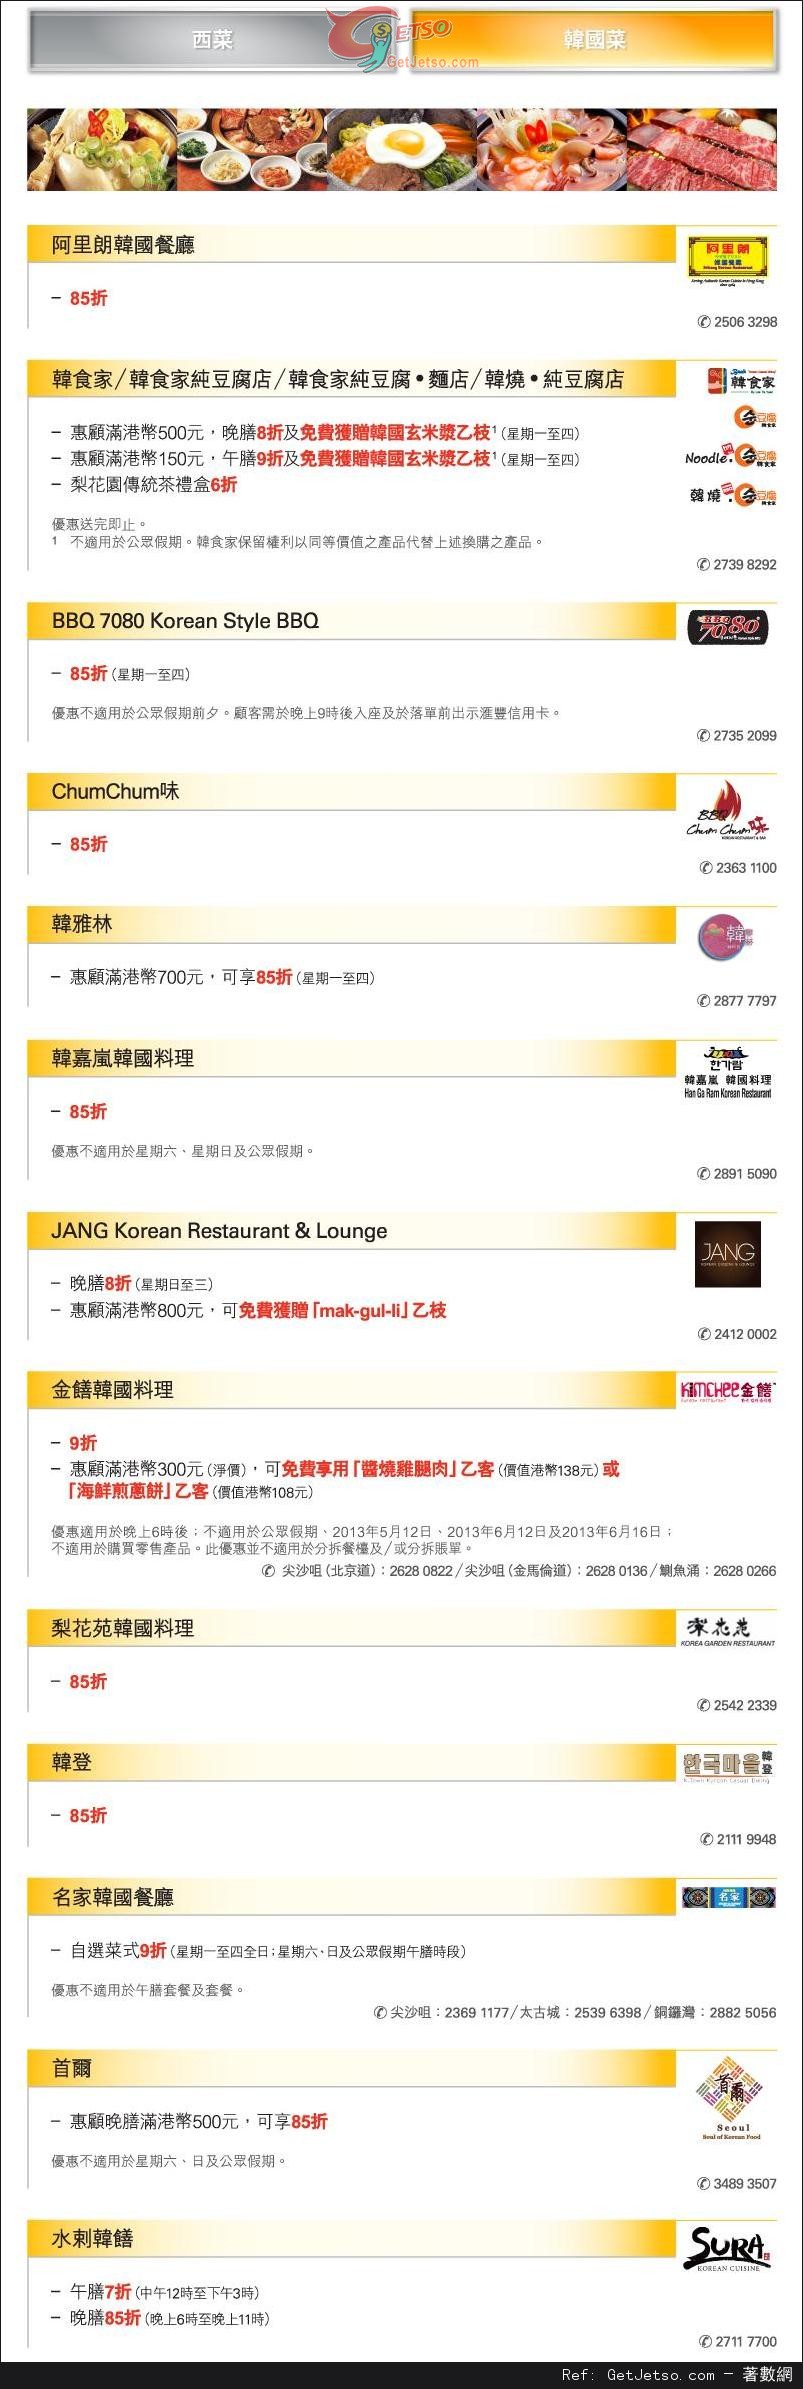 滙豐信用卡享精選西菜及韓國菜低至半價優惠(至13年6月30日)圖片2